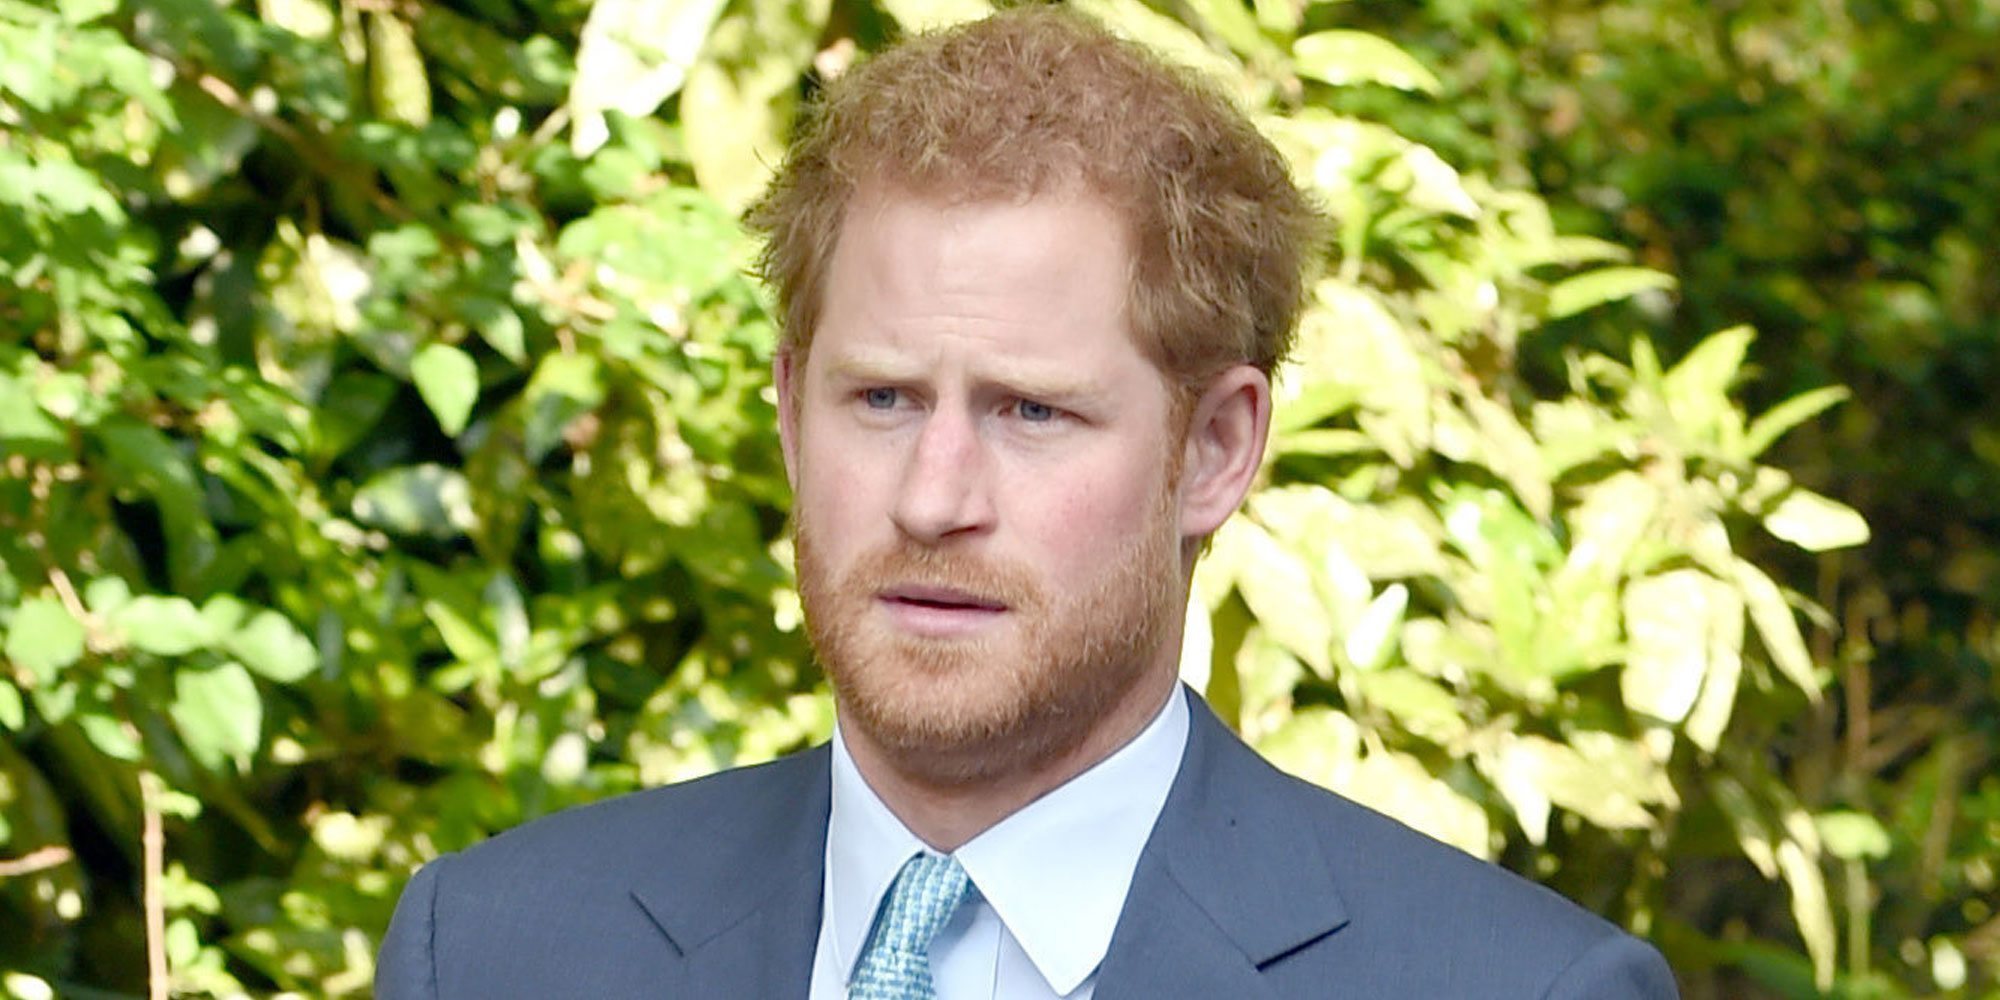 La decepción del Príncipe Harry con la Familia Real Británica ante lo que consideró un desplante